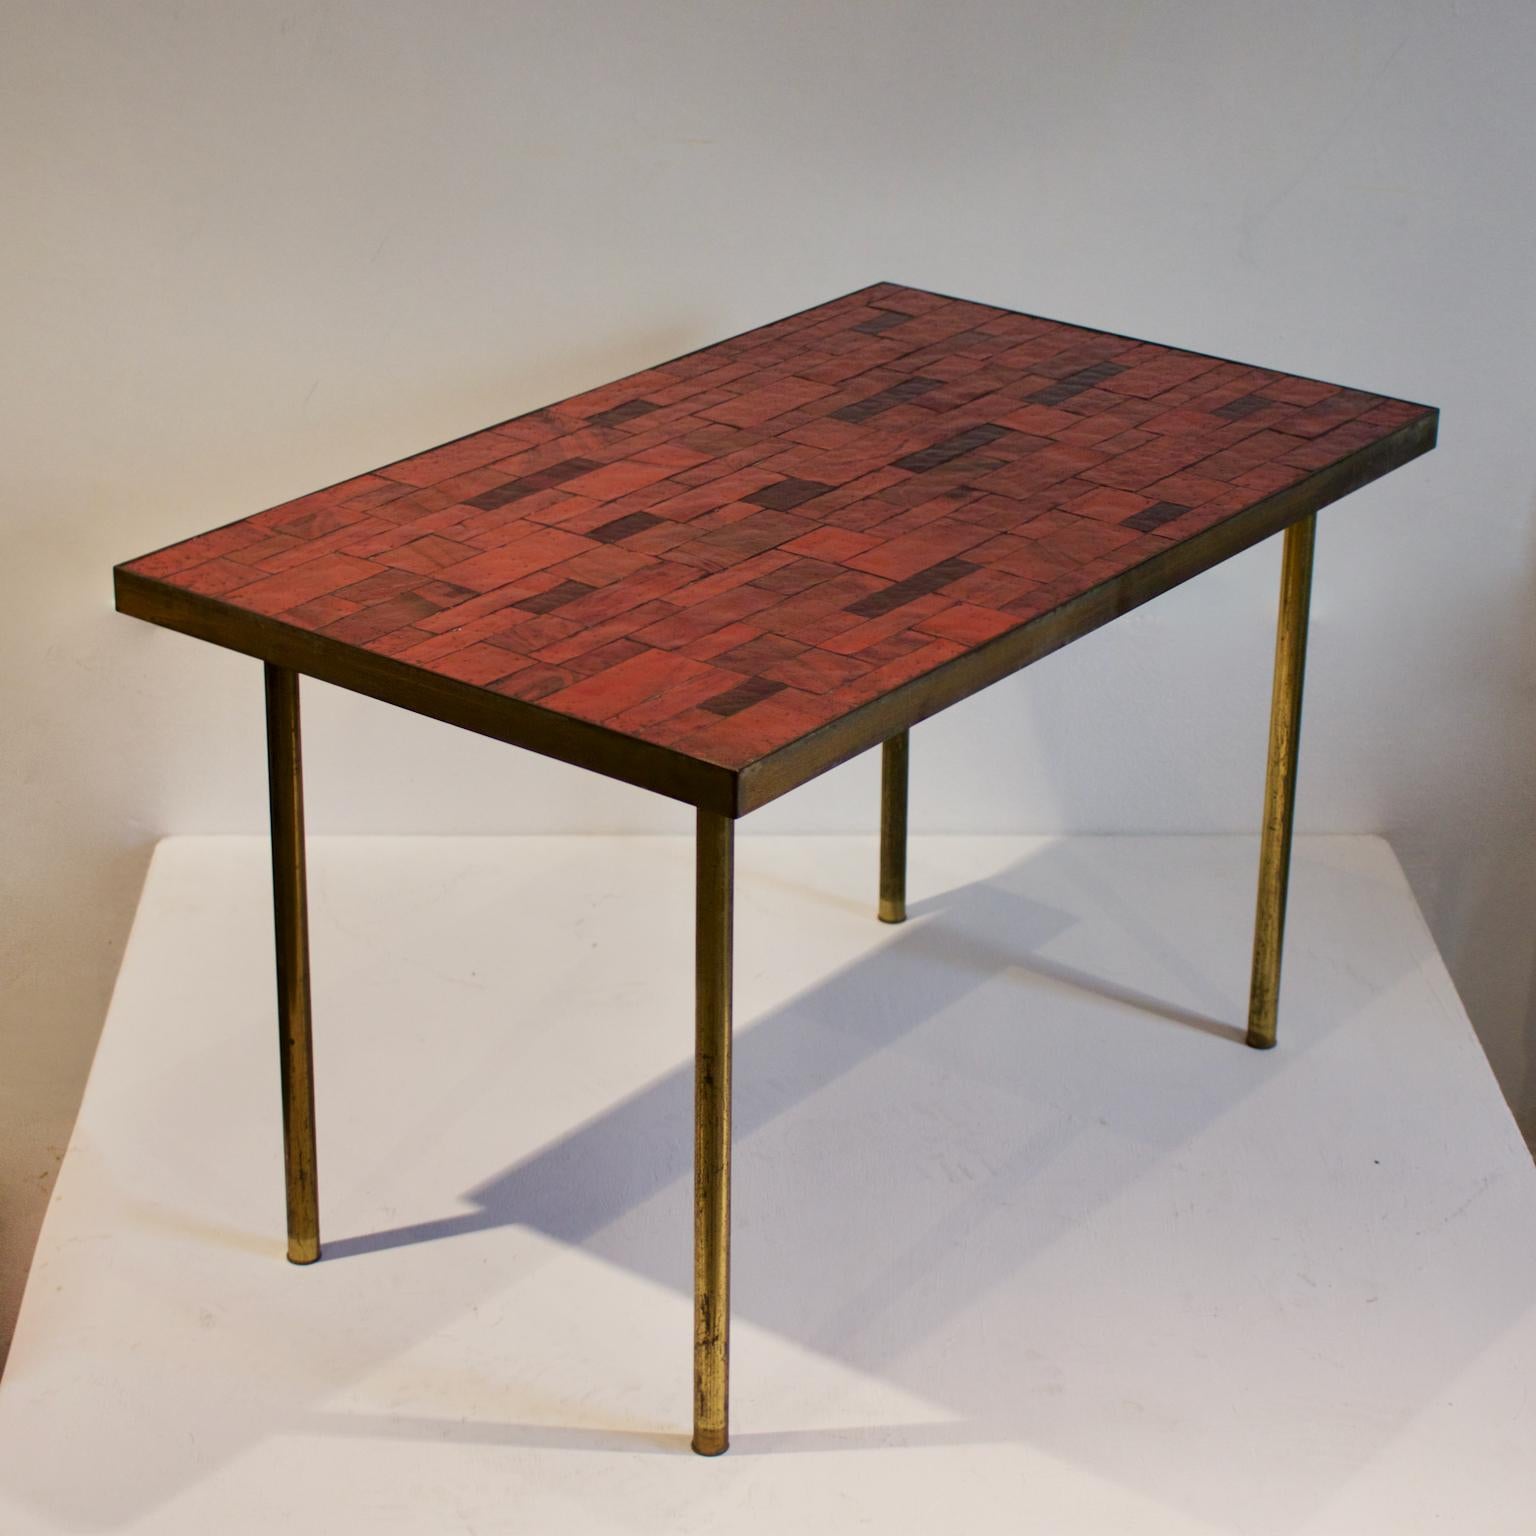 Ein Mosaik-Beistelltisch in warmen Rottönen, von Berthold Müller, Deutschland, Mitte des 20.

Der Tisch ist mit rechteckigen Steinmosaikfliesen auf Holz verkleidet und mit einer Einfassung aus Bronze oder Messing versehen. Die Platte ruht auf